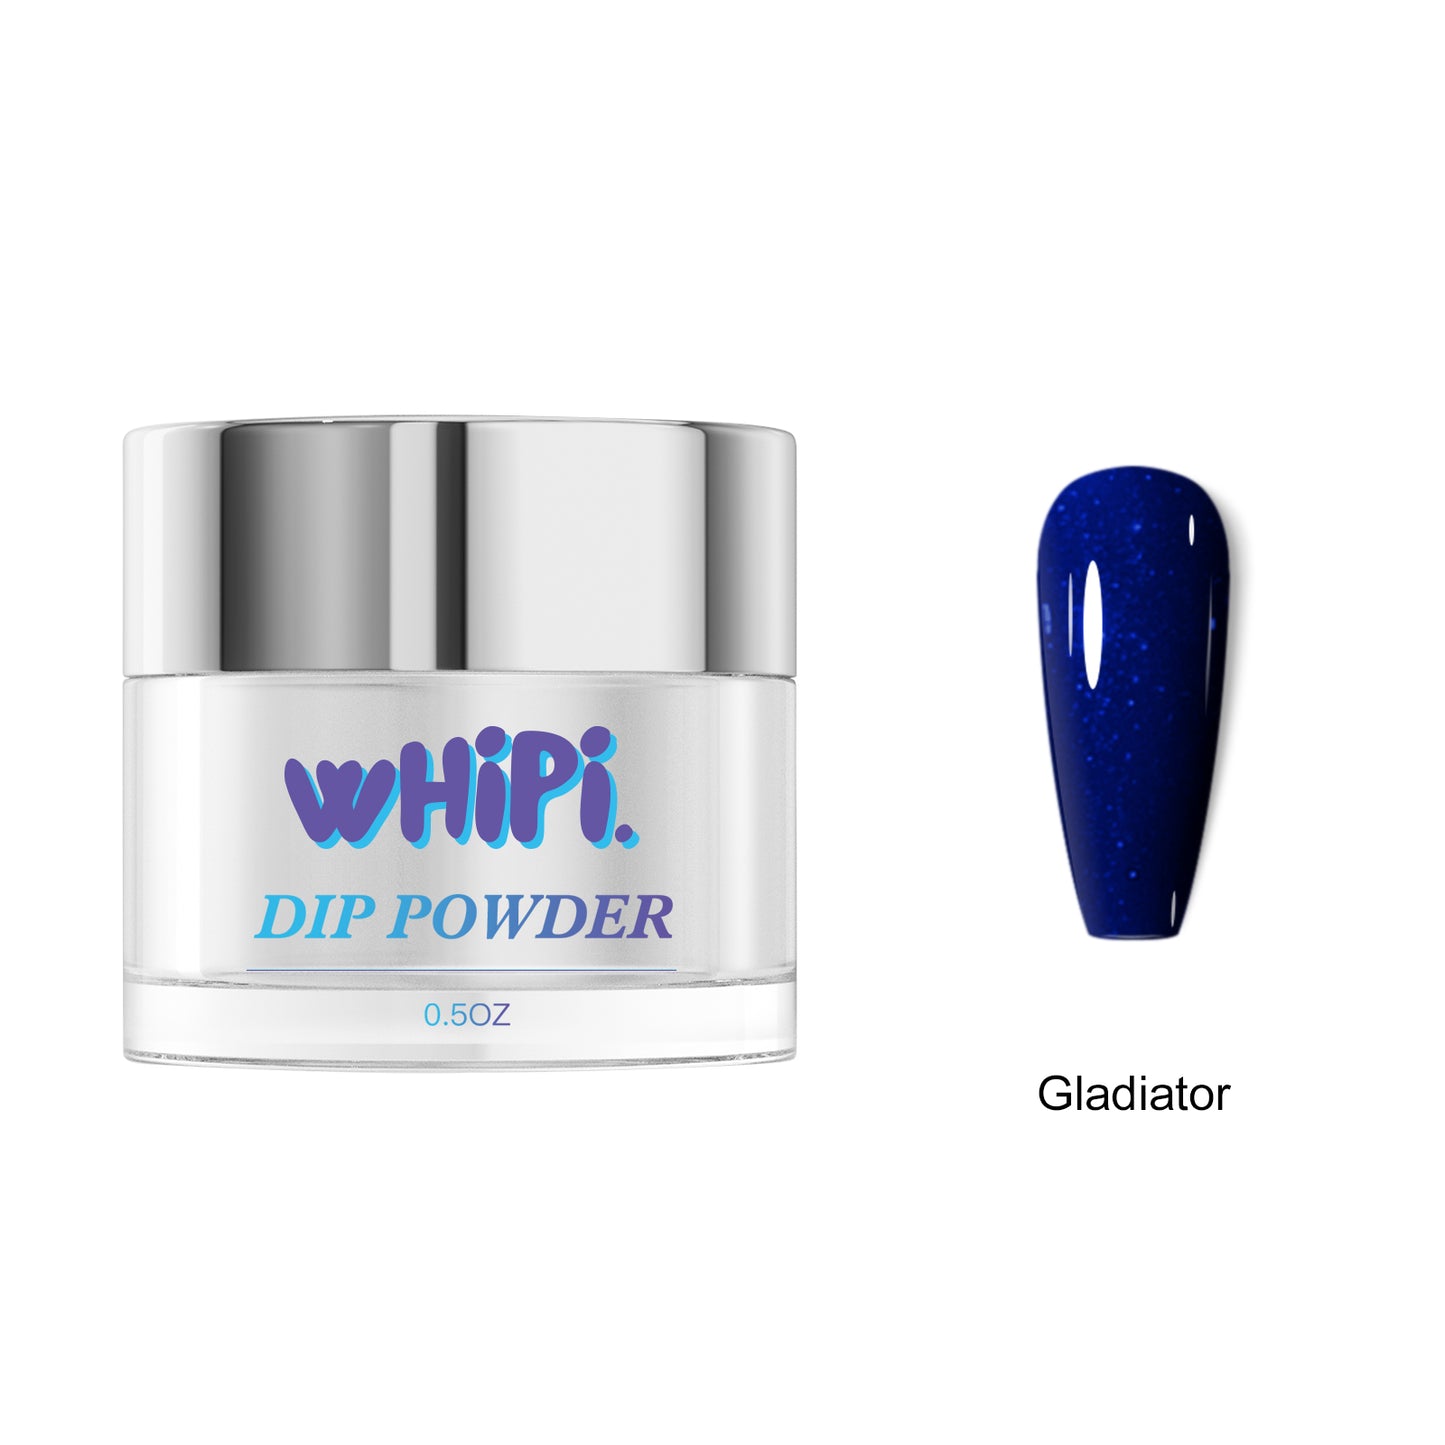 Gladiator Dip Powder